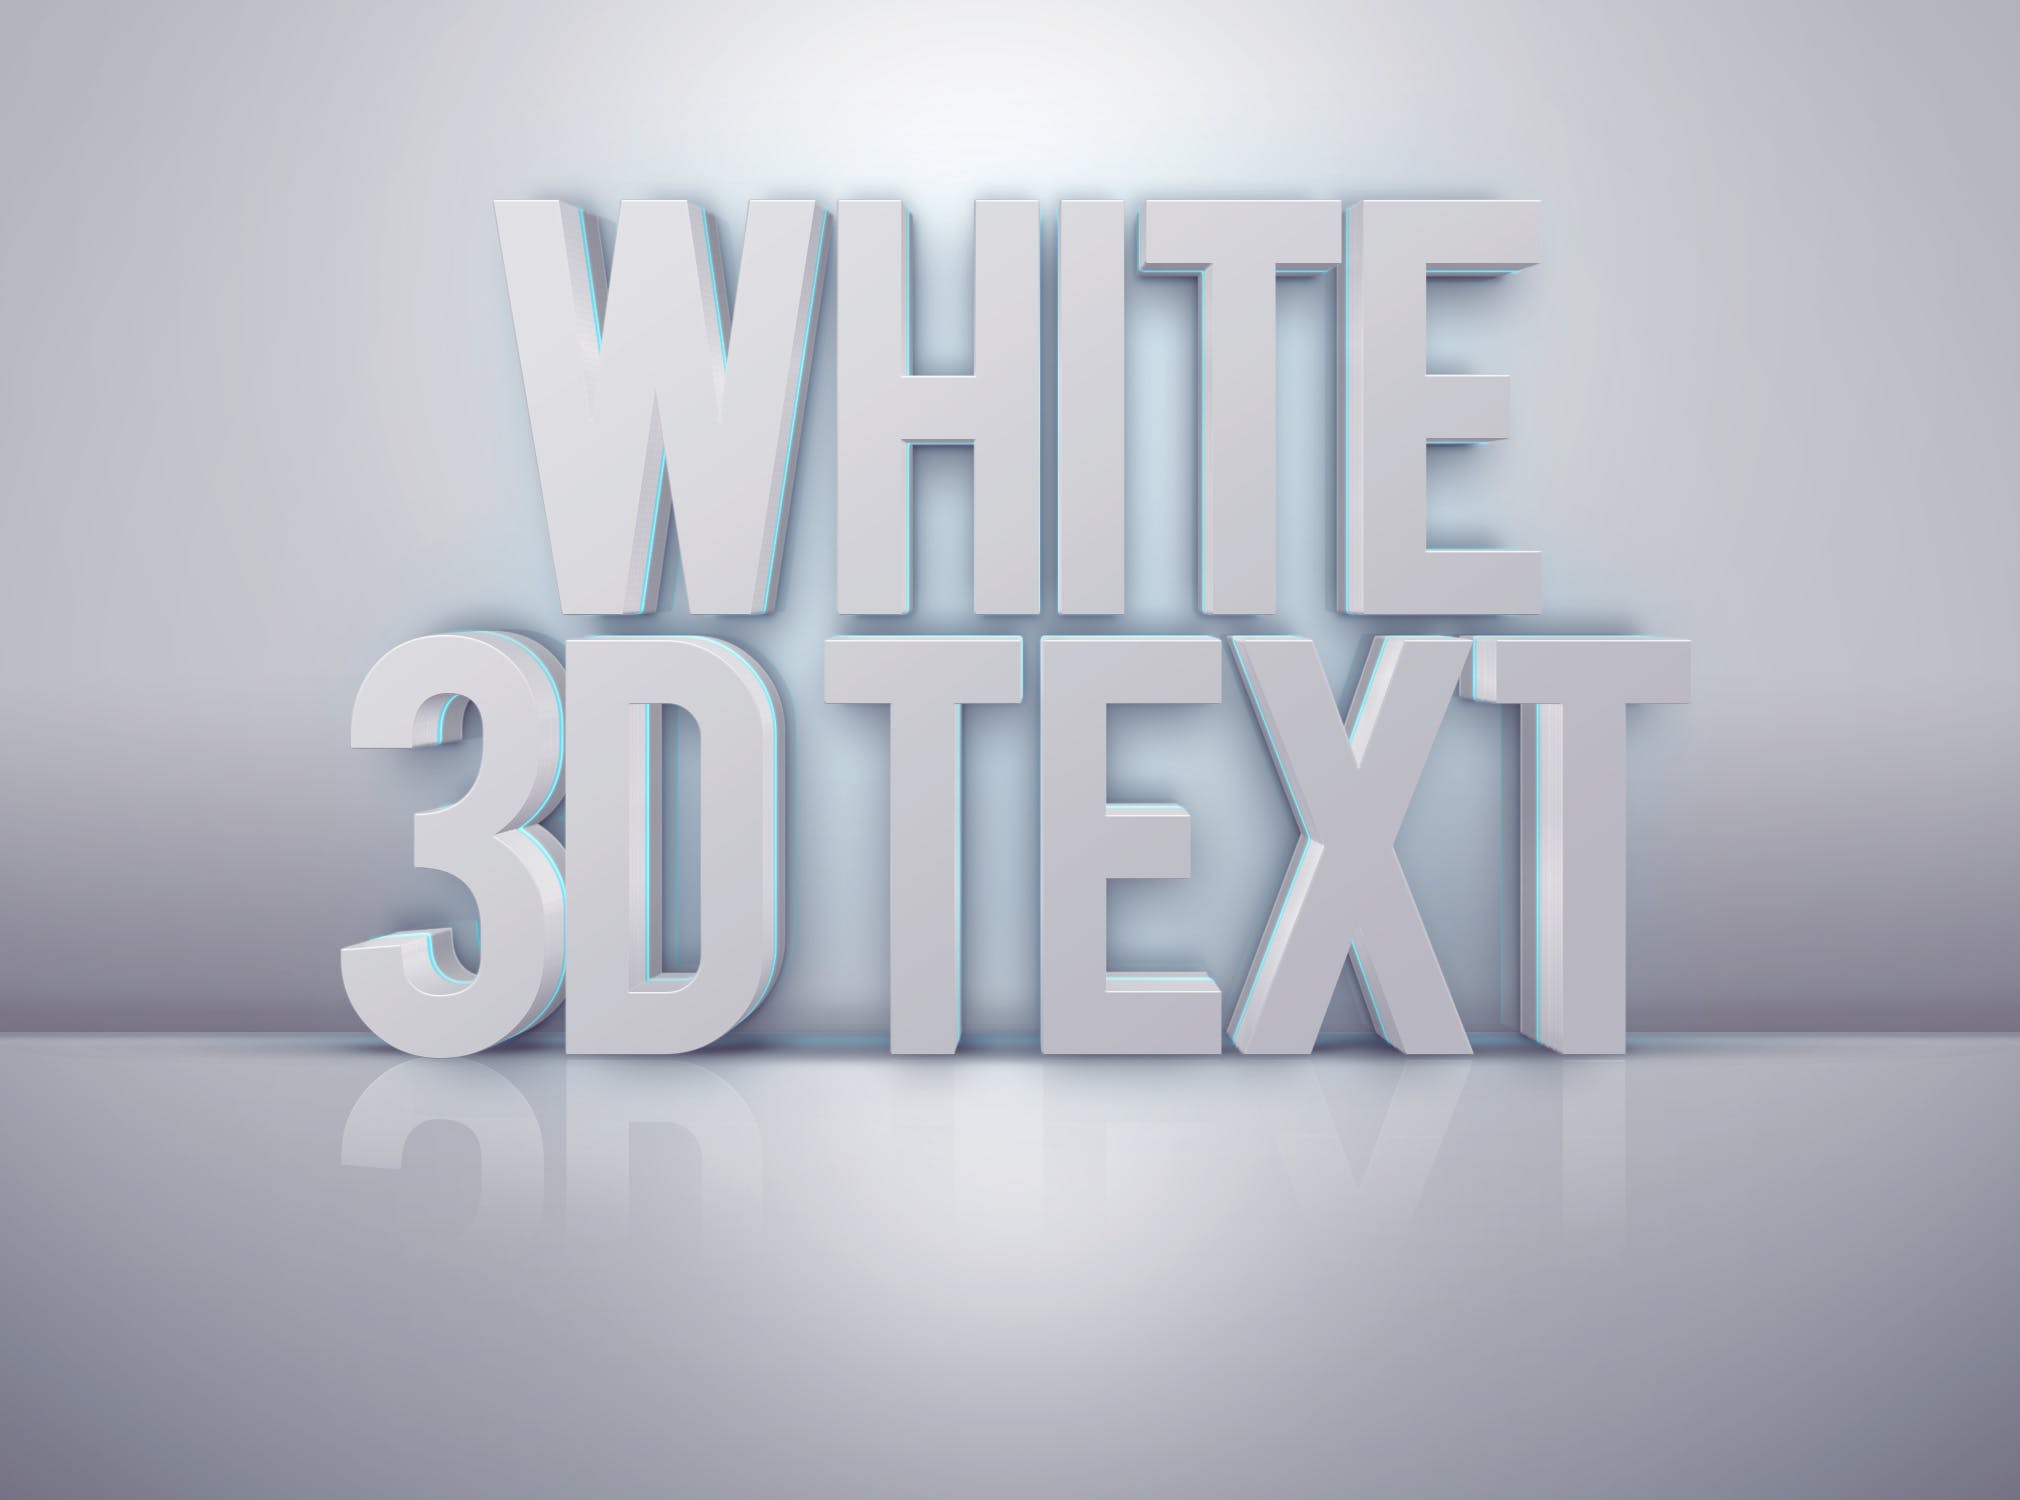 三维立体白模字体特效PSD模板素材 Pro 3D Text